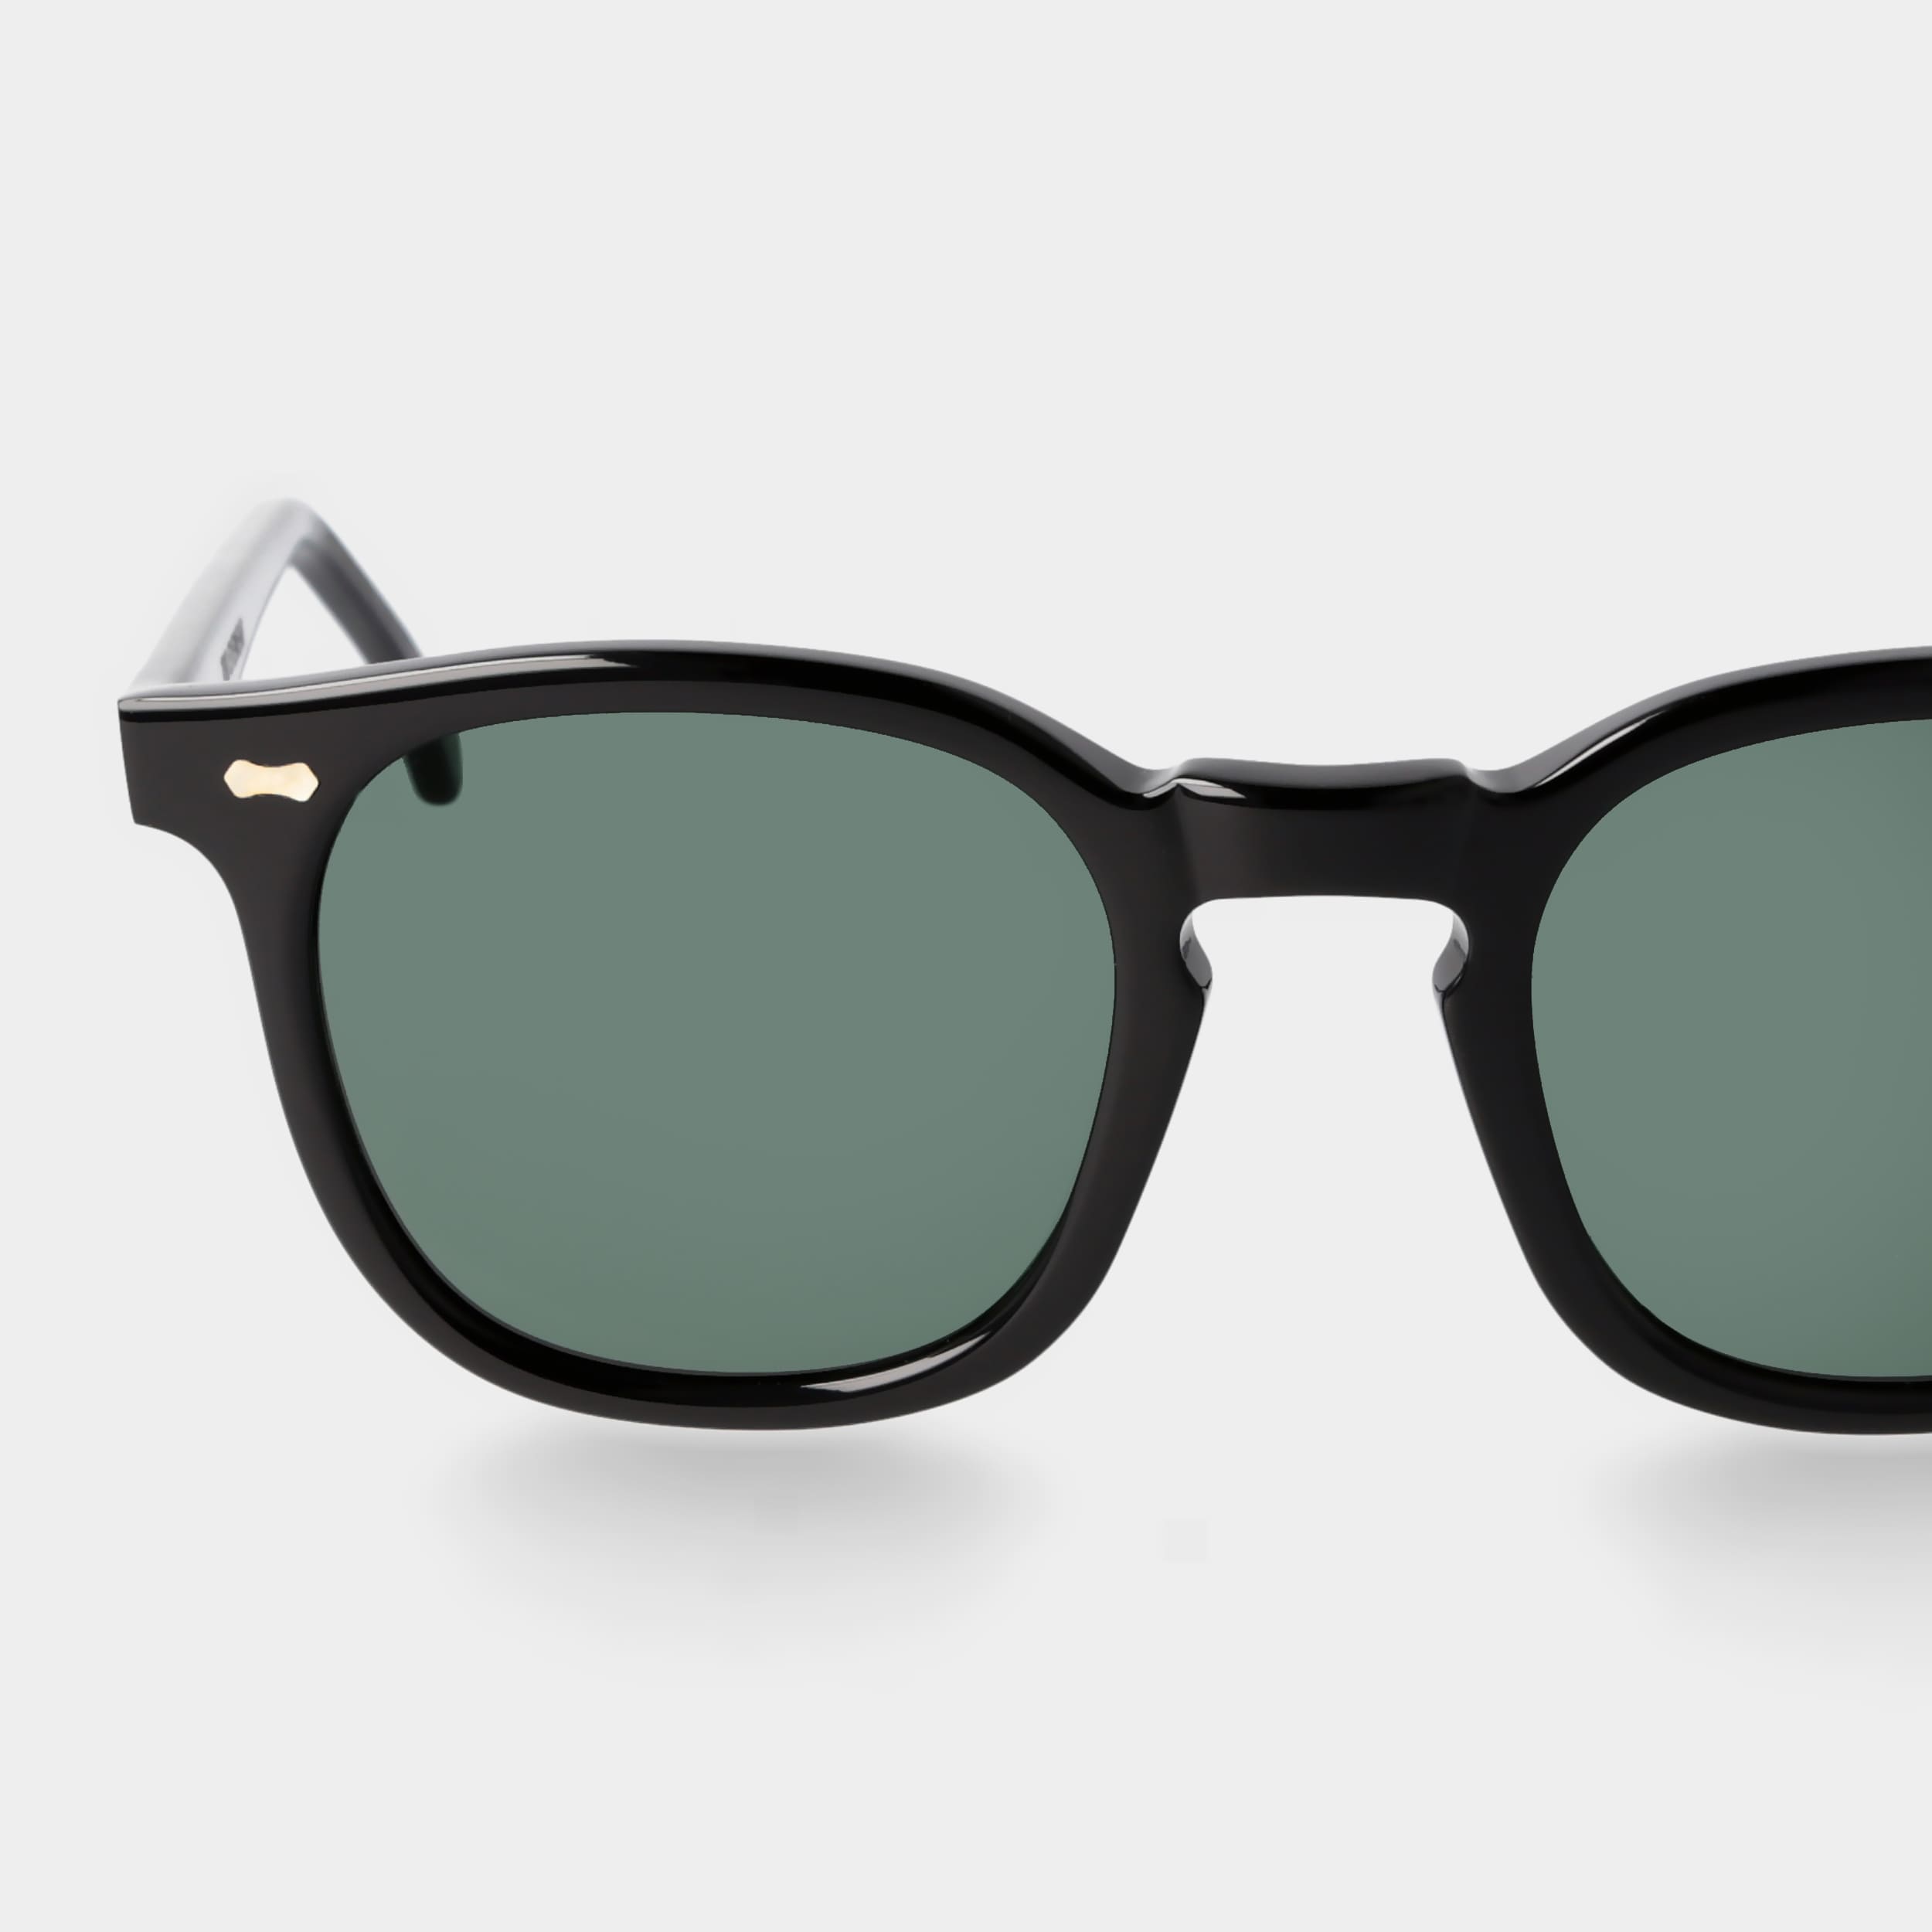 sunglasses-twill-eco-black-polarized-sustainable-tbd-eyewear-lens